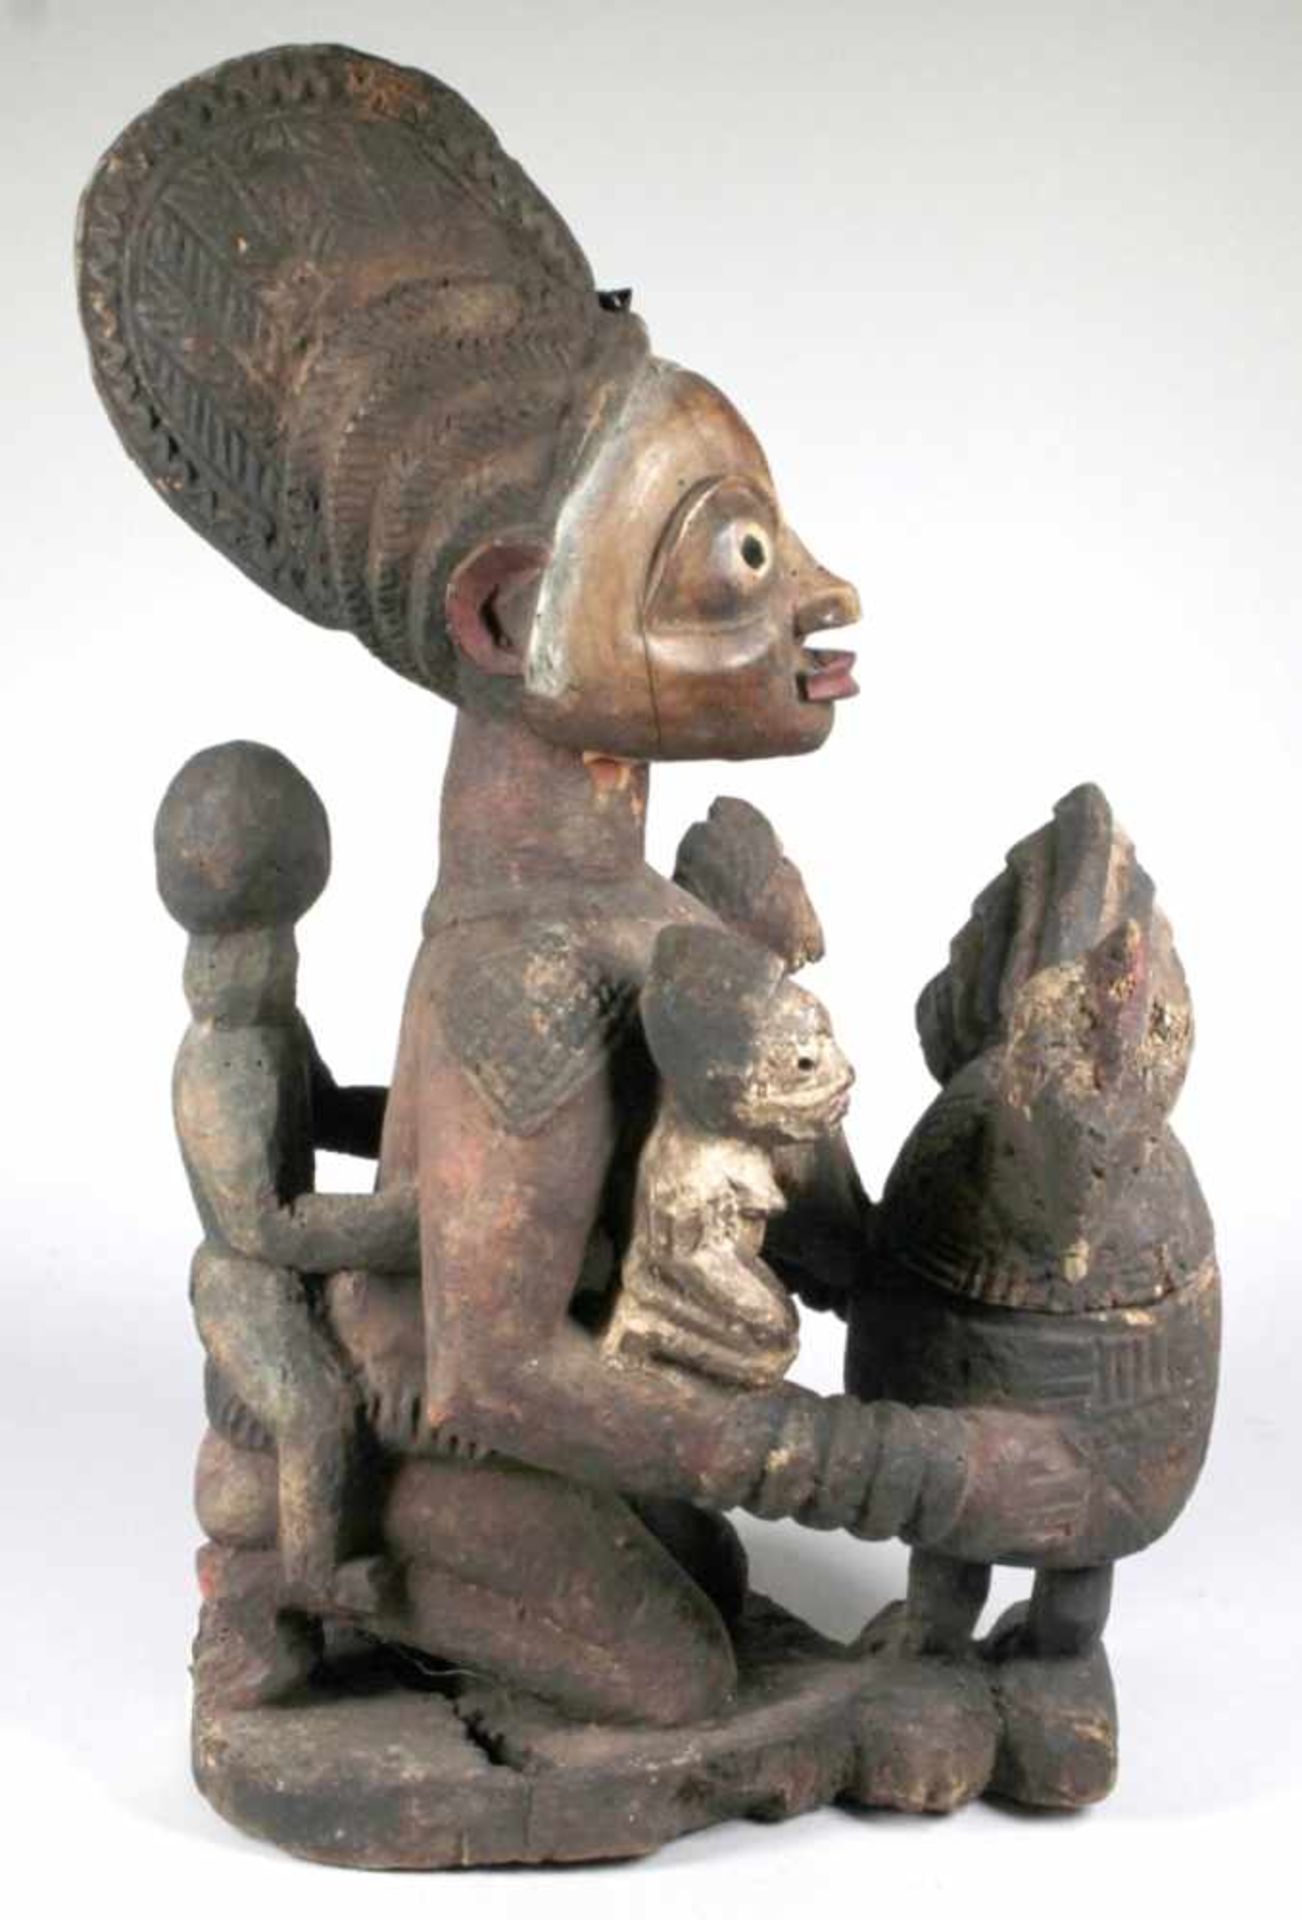 Mutter-Figur bzw. Schalenträgerin, Yoruba, Nigeria, auf Flachplinthe kniende, weibliche< - Bild 4 aus 5